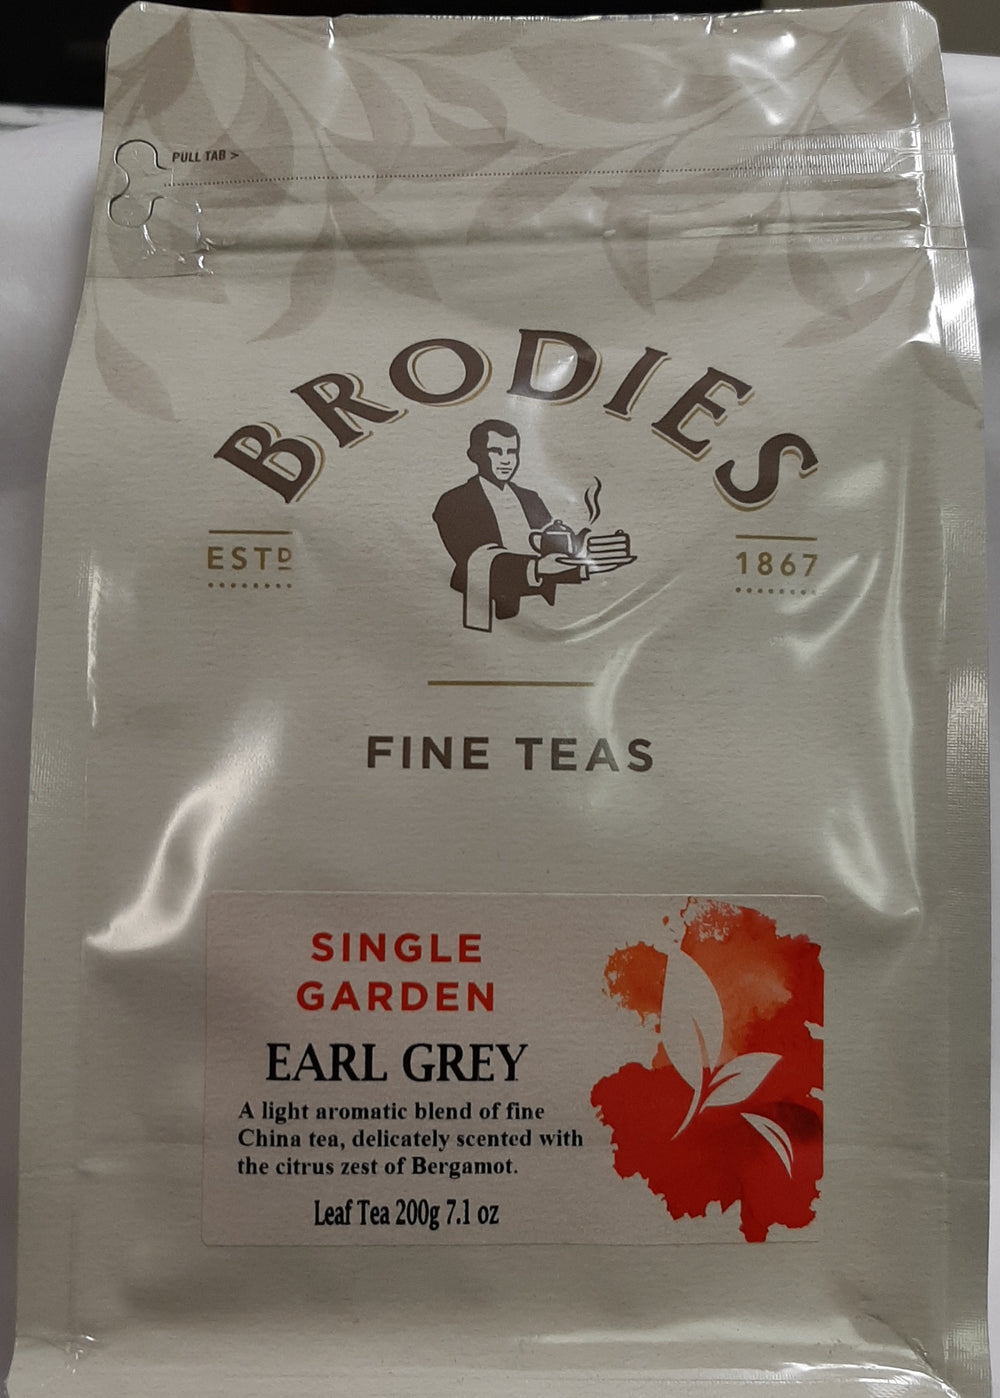 Brodies Earl Grey Leaf Tea 200g